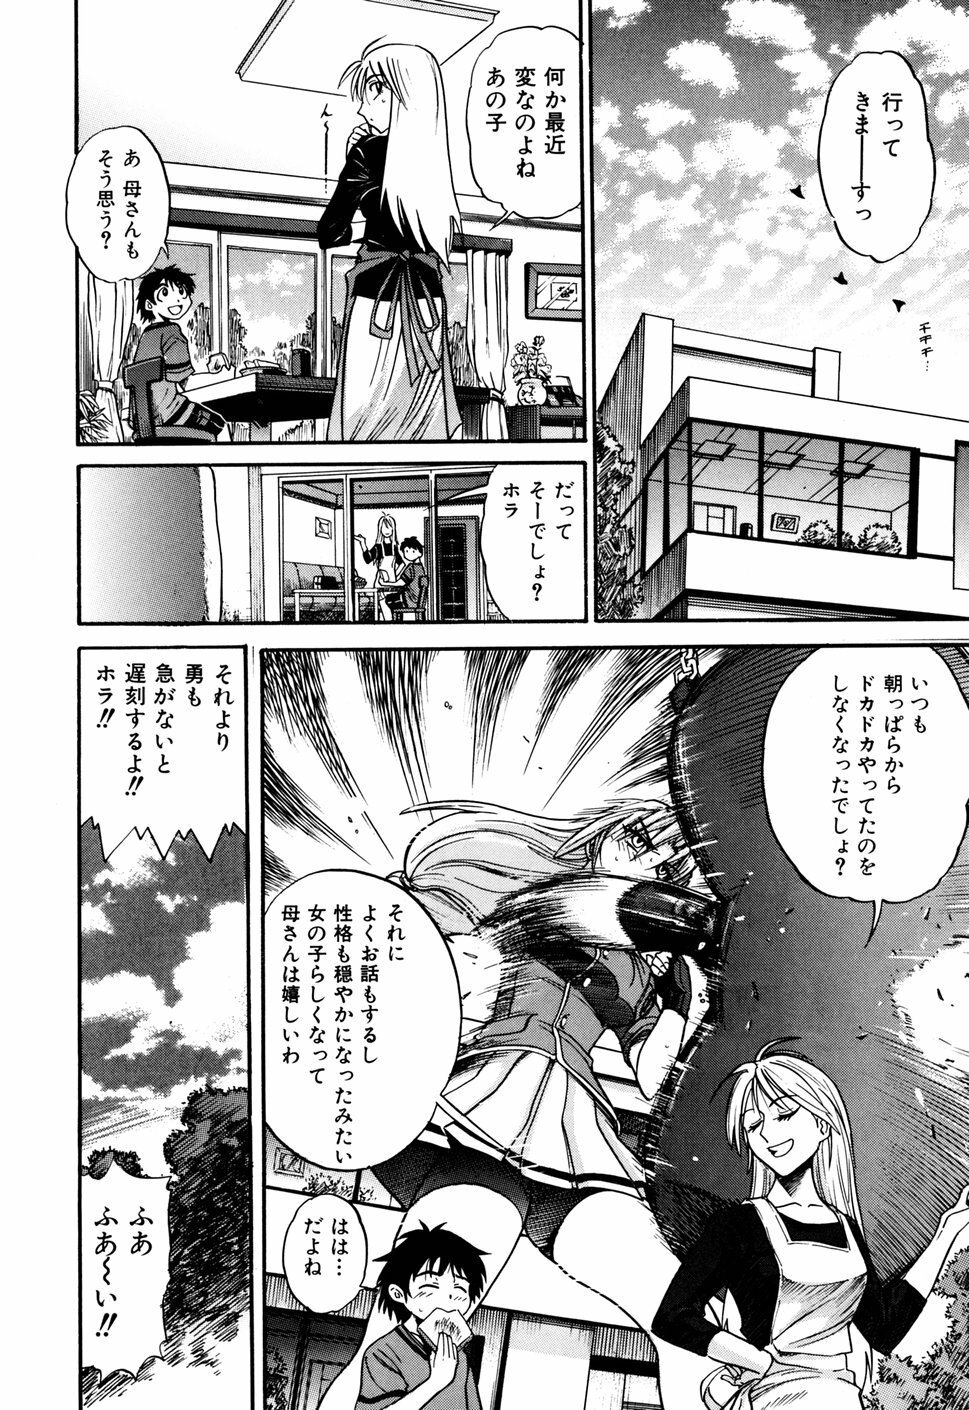 [DISTANCE] Ochiru Tenshi Vol. 1 page 38 full